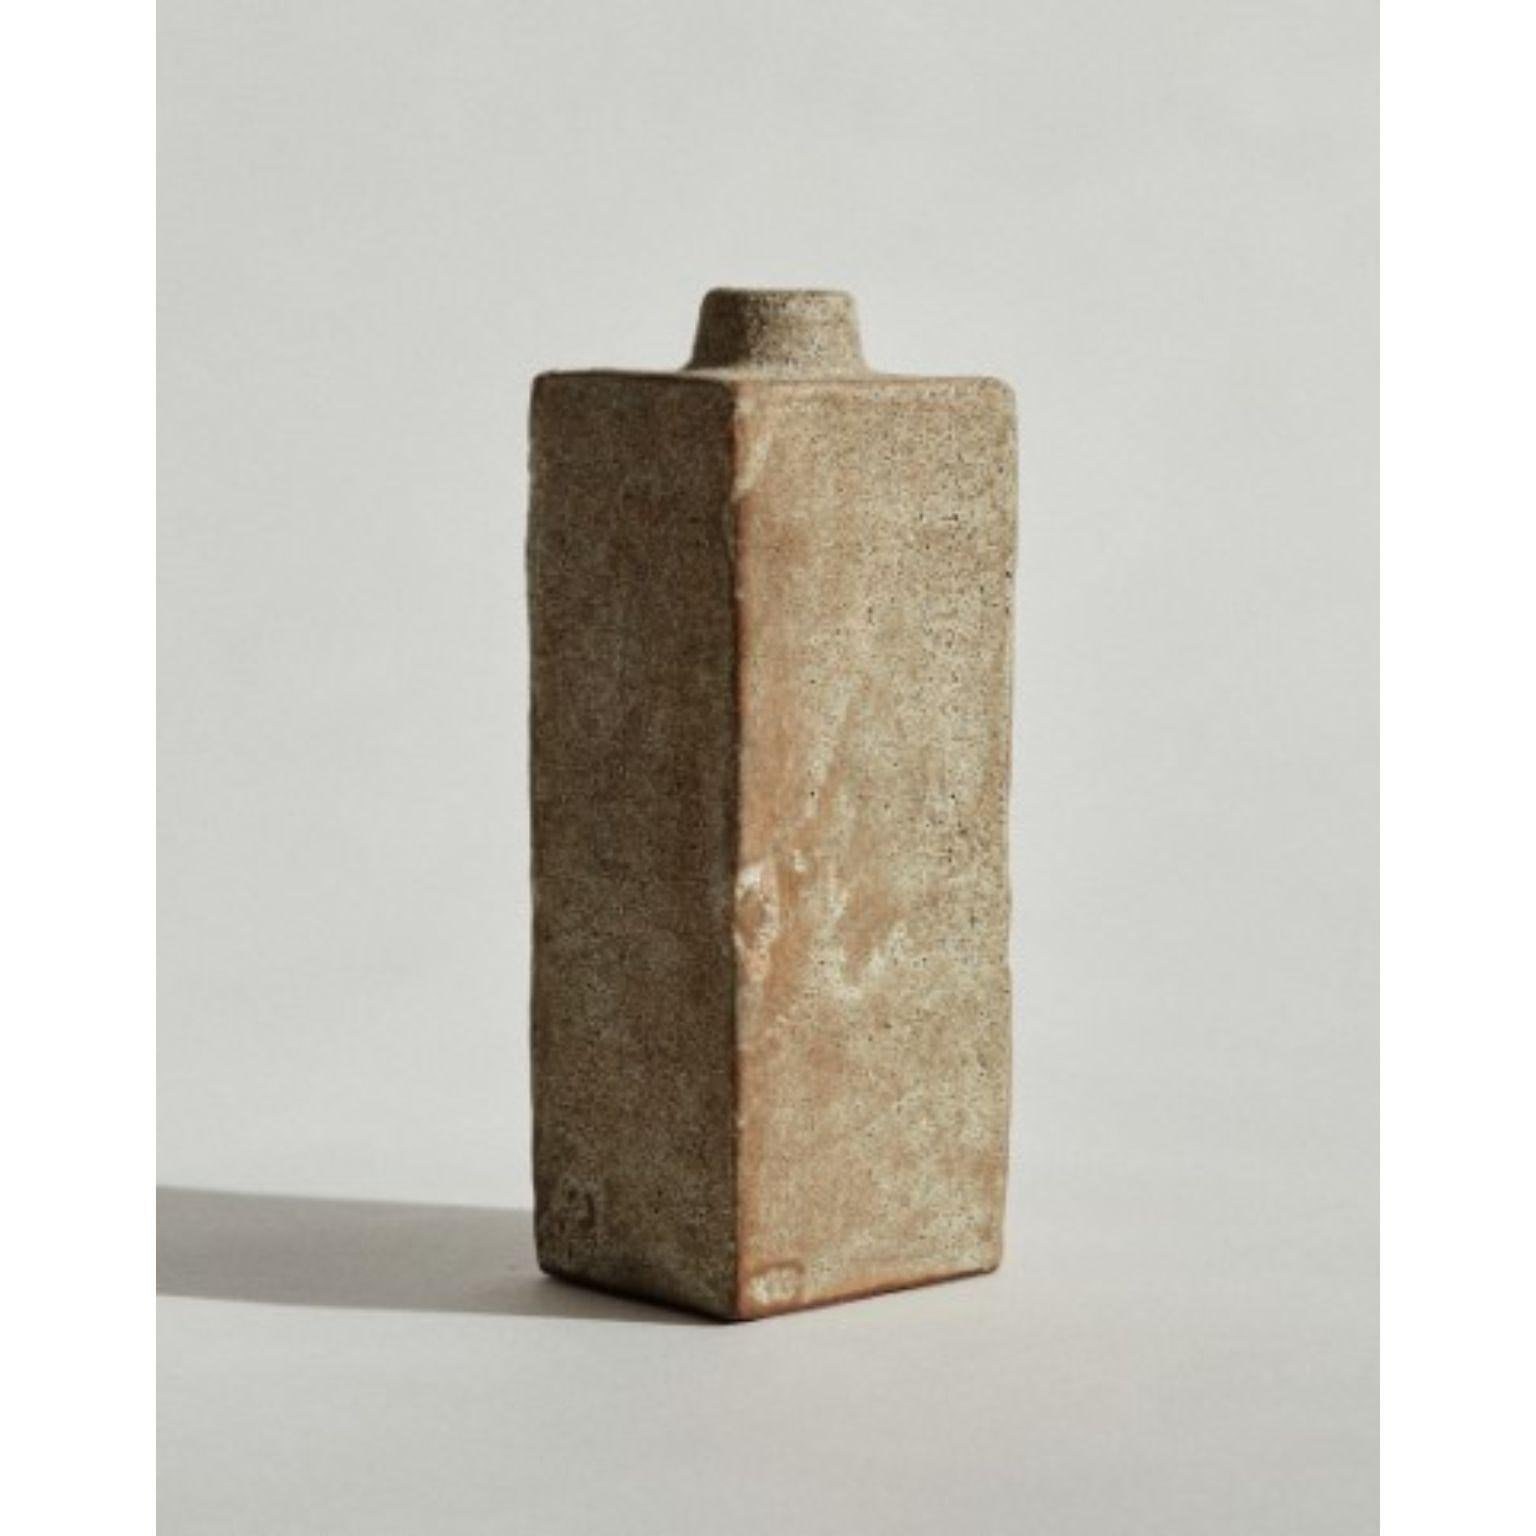 Flasche #2, handmodelliert von Marta Bonilla
Abmessungen: D8 x H20 cm
MATERIALIEN: Lehm, Glasur

Flasche 2 Stück Hand modelliert in rotem Ton und glasiert in vulkanischen beige Glasur.

Marta Bonilla entwirft und kreiert ihre Stücke in